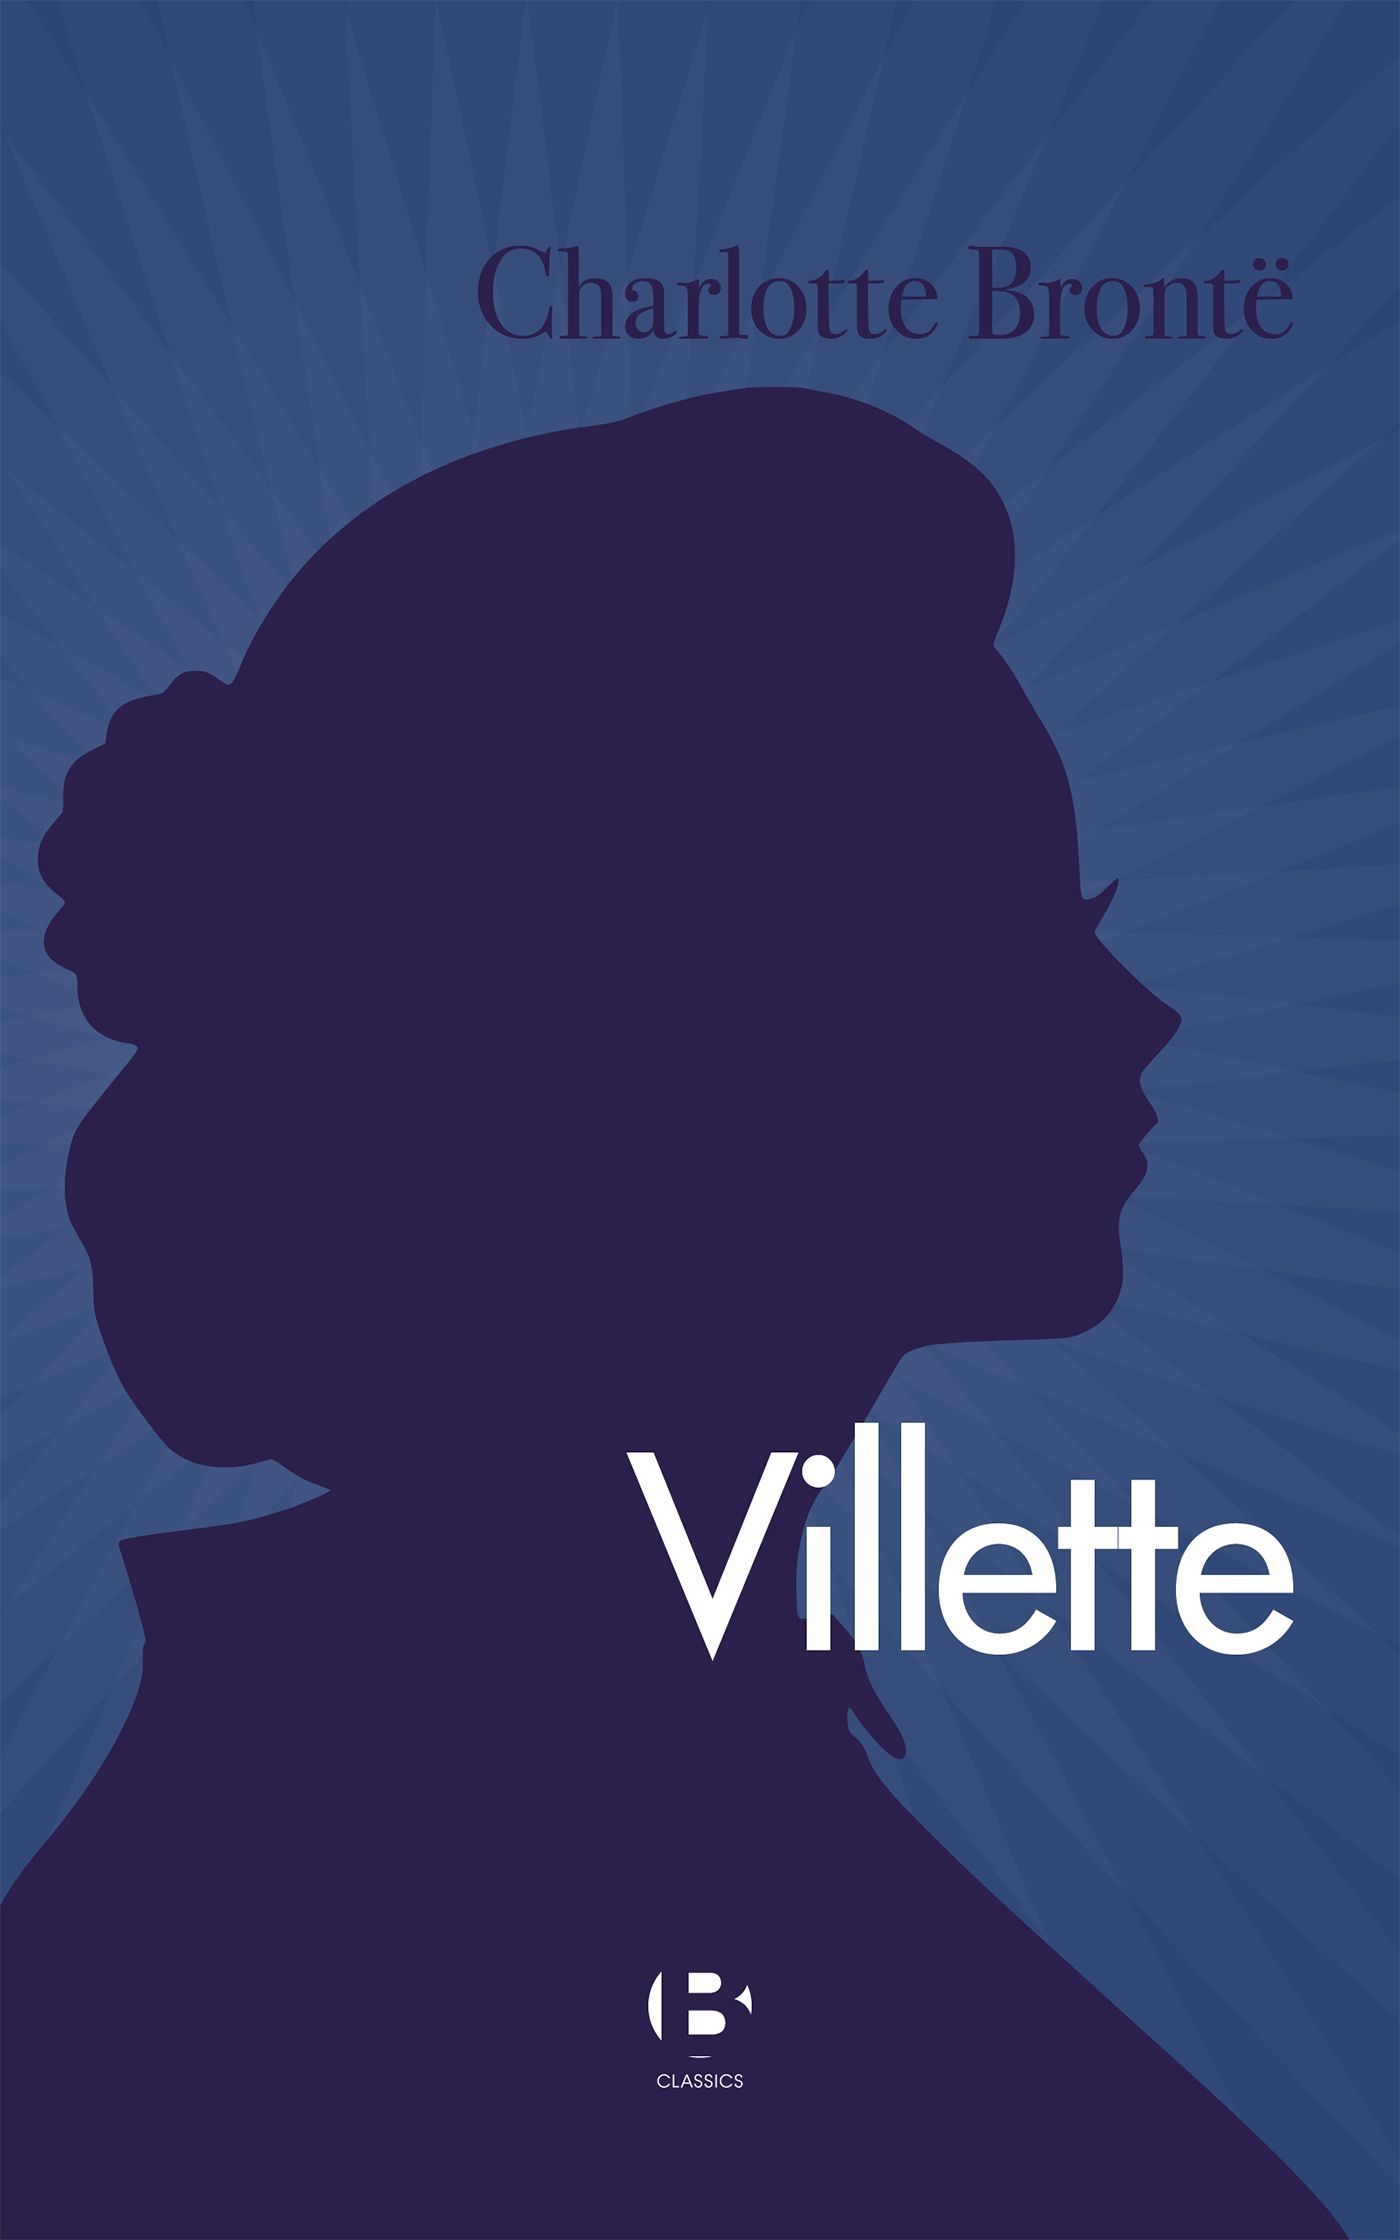 Villette, eBook by Charlotte Brontë